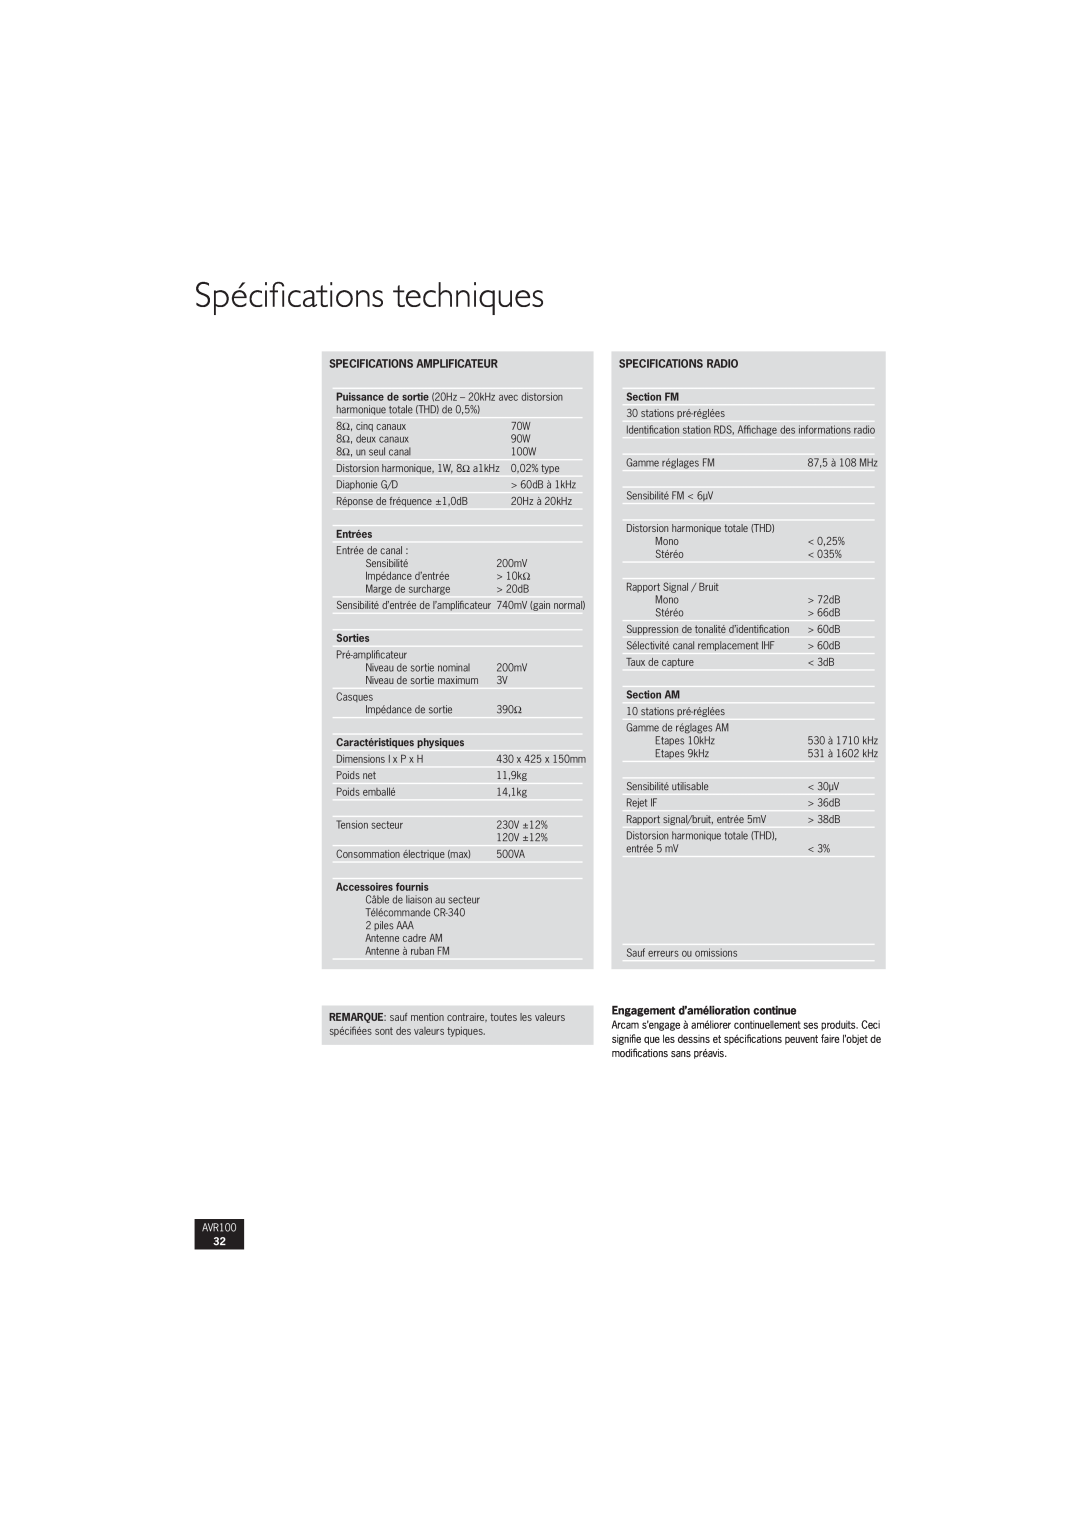 Arcam AVR100 manual Spéciﬁcations techniques, Specifications Amplificateur, Entrées, Sorties, Caractéristiques physiques 